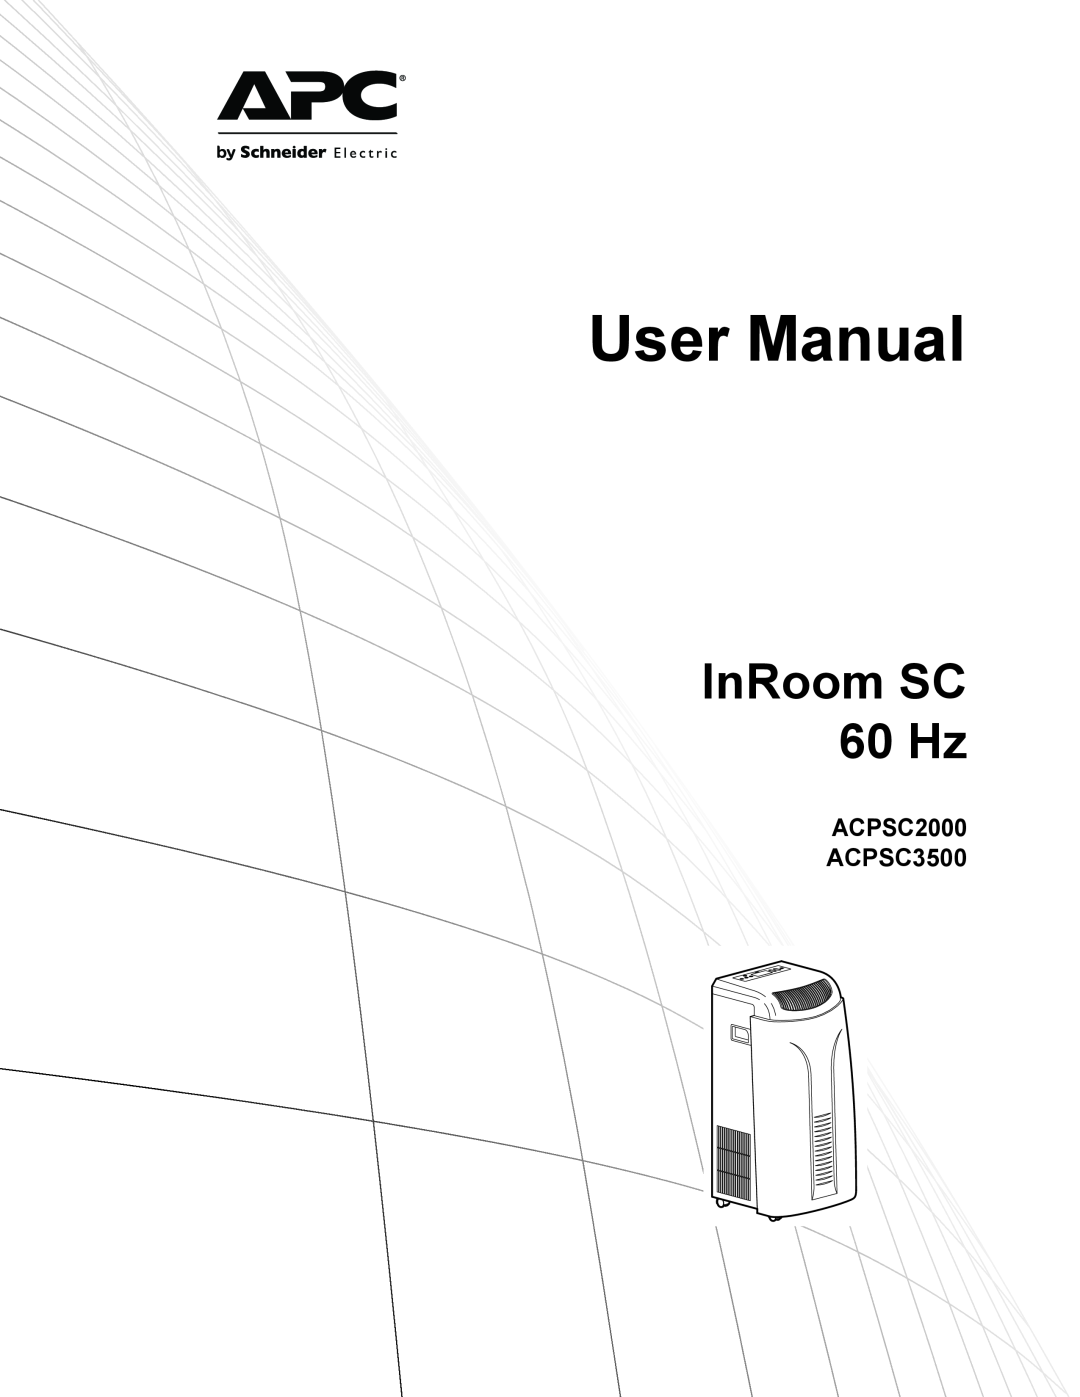 APC user manual ACPSC2000 ACPSC3500, InRoom SC 60 Hz 